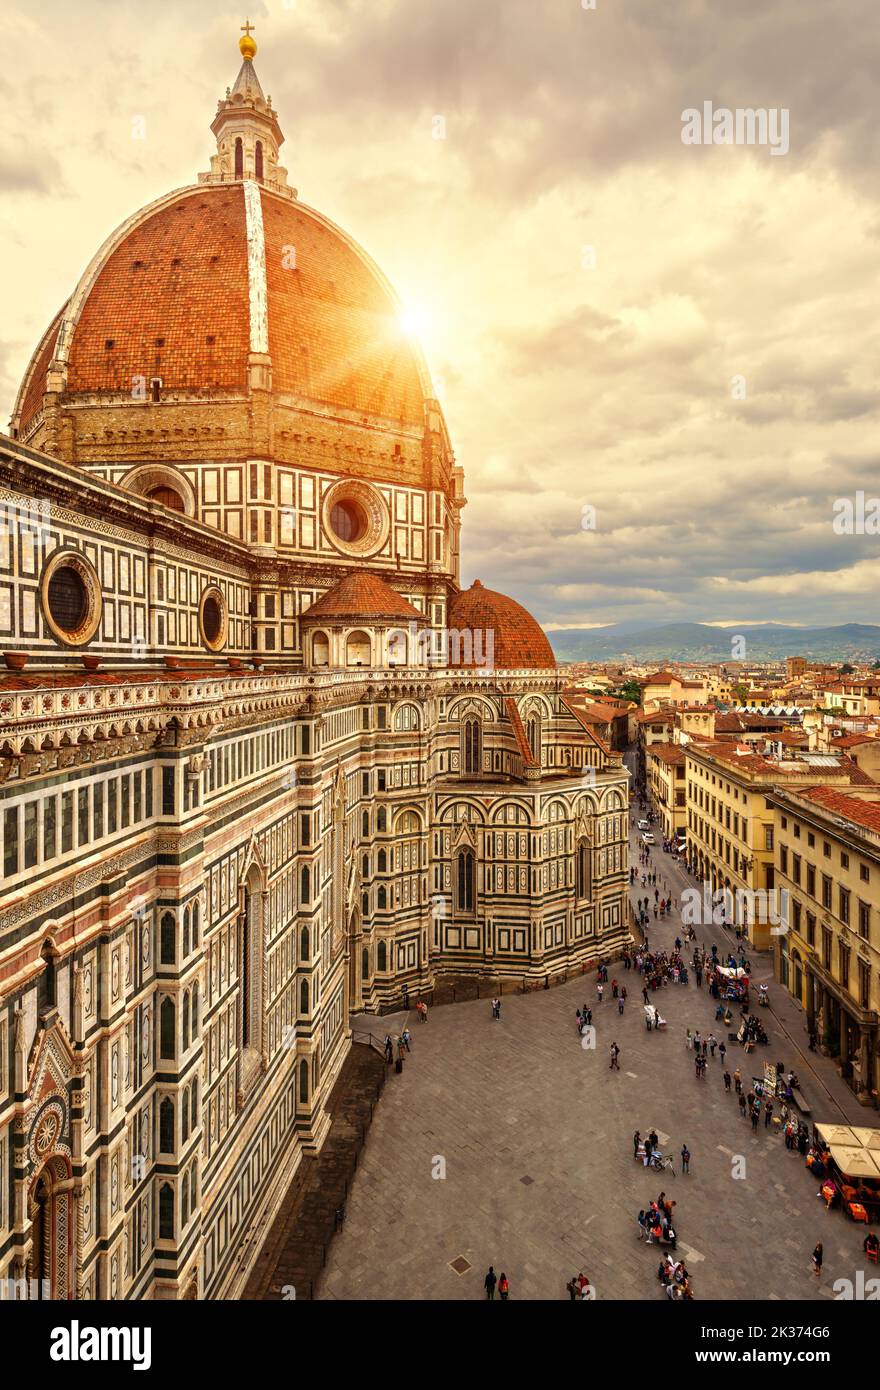 Florence en été, Italie, Europe. Vue verticale et ensoleillée sur le Duomo ou la basilique de Santa Maria del Fiore (Sainte-Marie de fleurs), point de repère de Florence Cit Banque D'Images